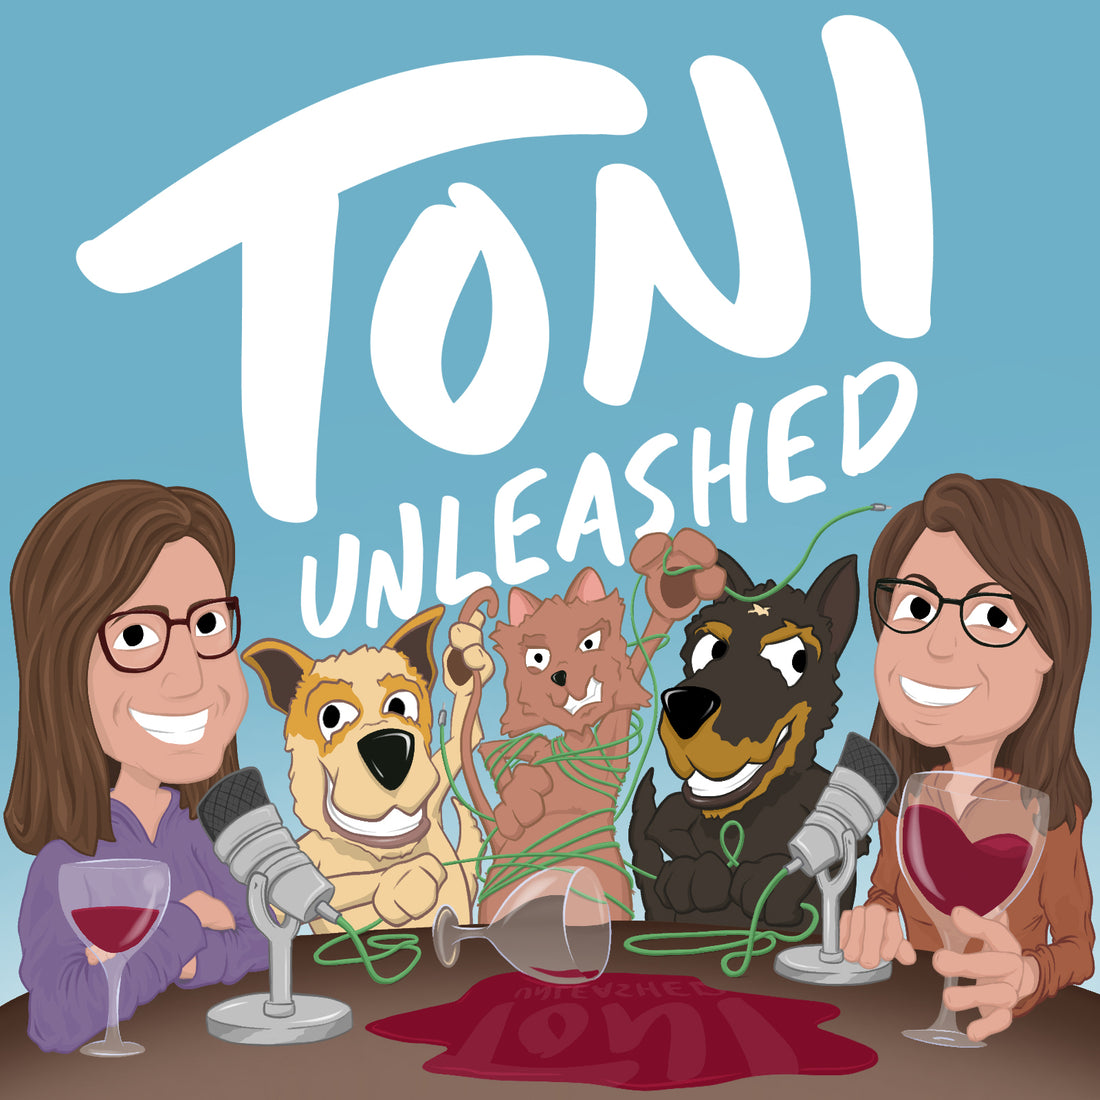 Toni Unleashed #podcast: Season 1/Episode 27